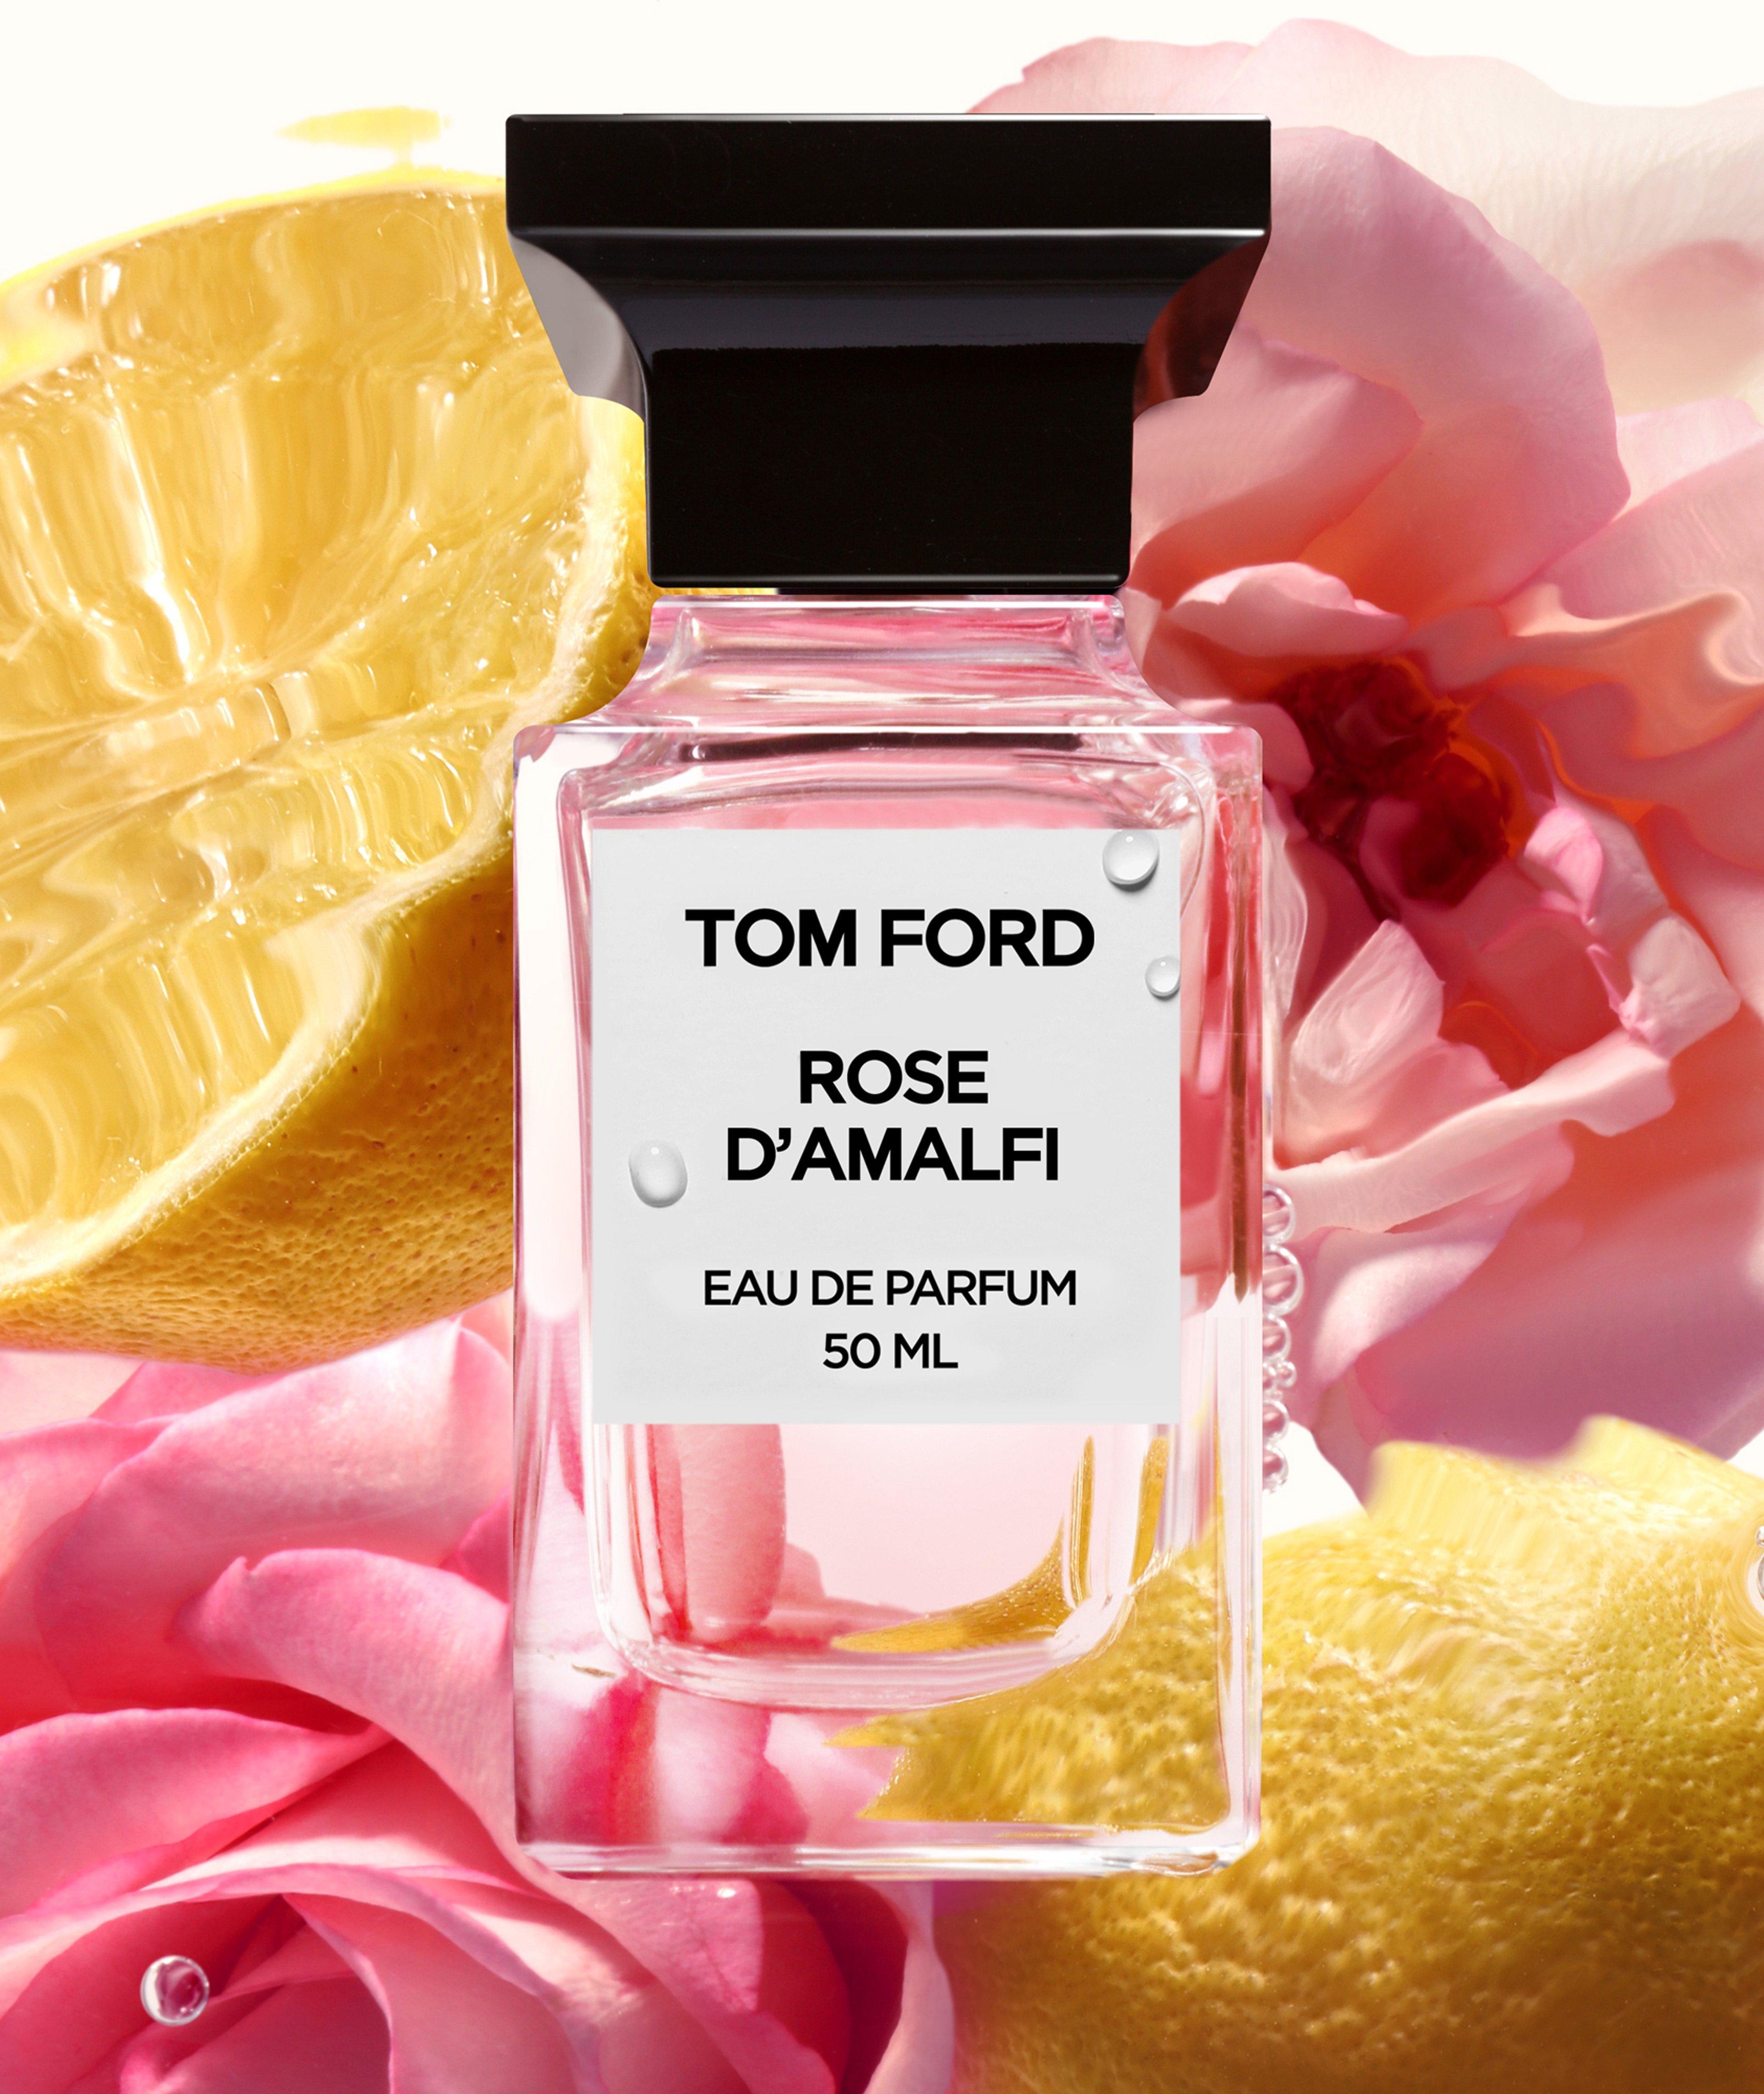 Eau de parfum Rose d’Amalfi (50 ml) image 1